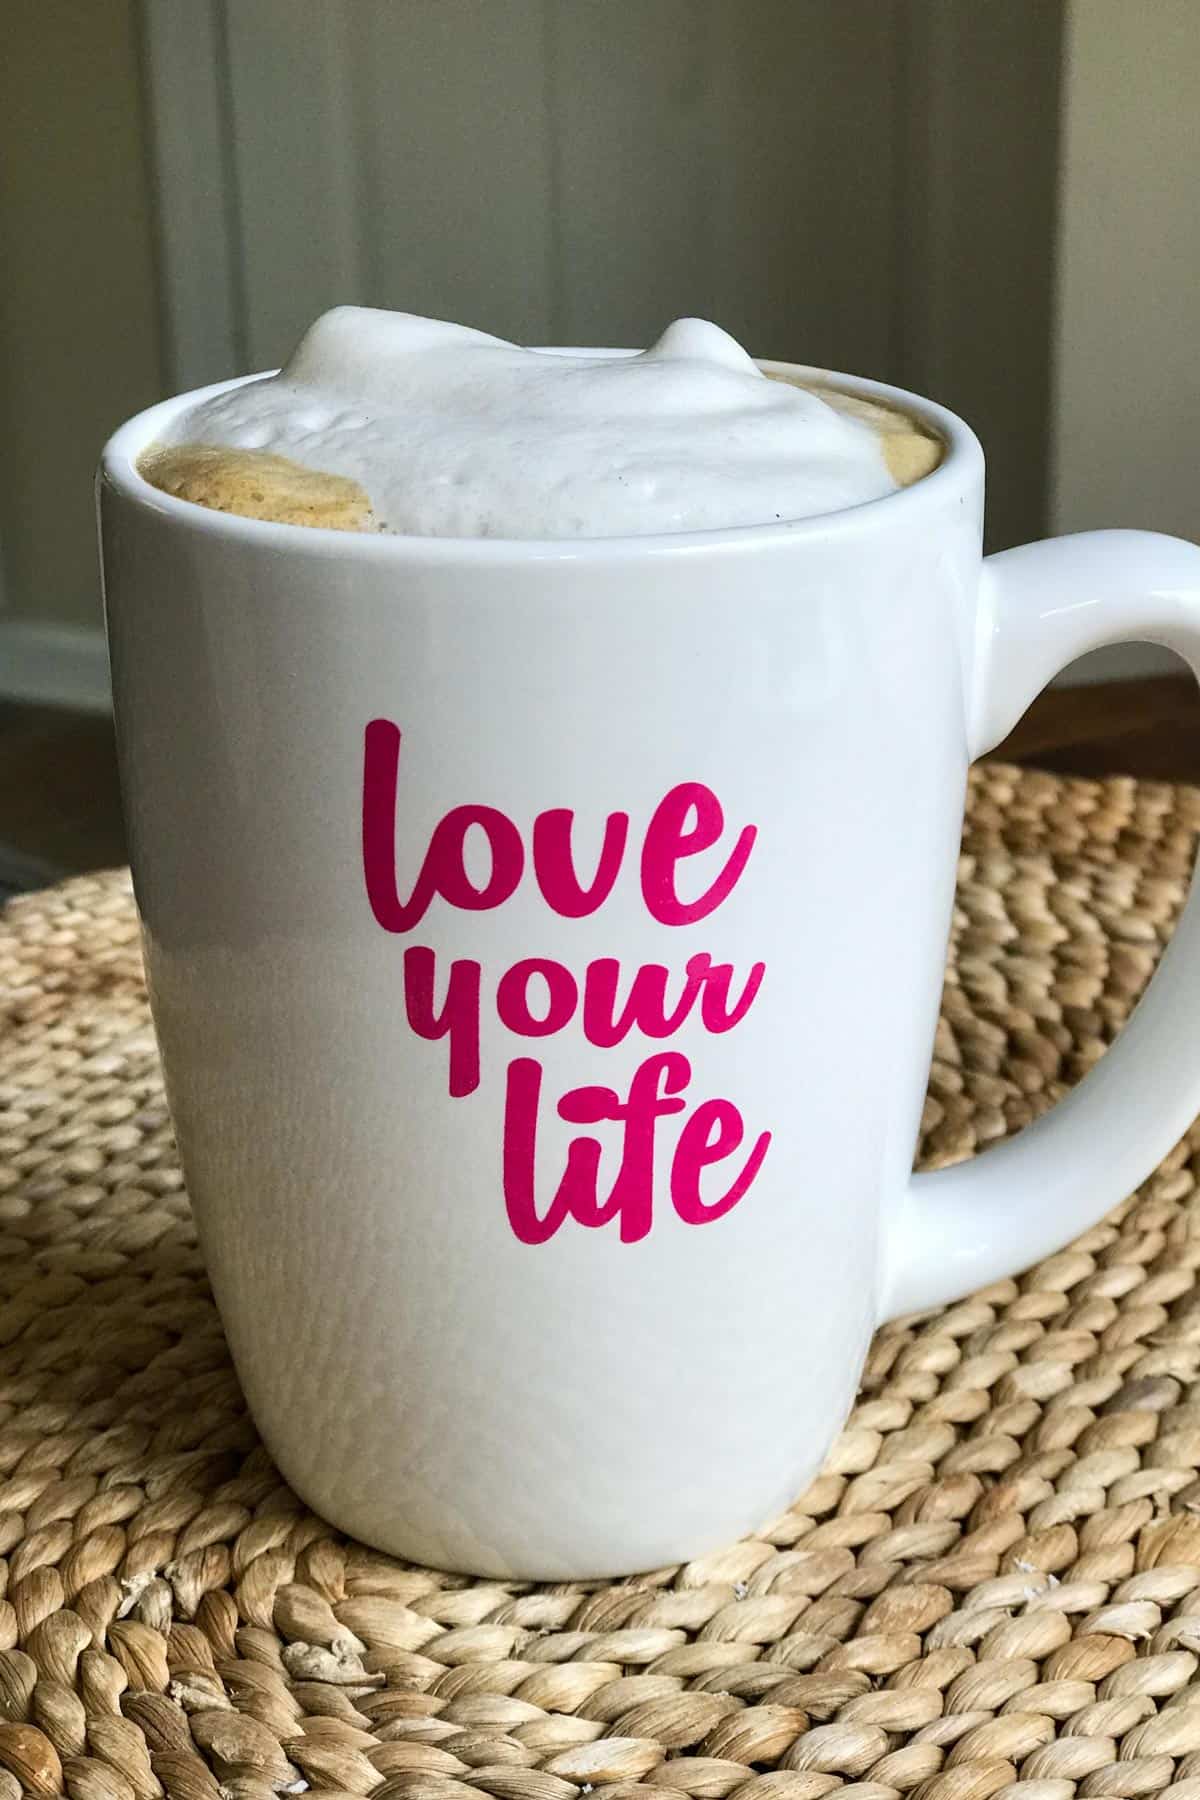 Tejmentes cappuccino bögrében, amelyen az áll "Szeresd az életed"